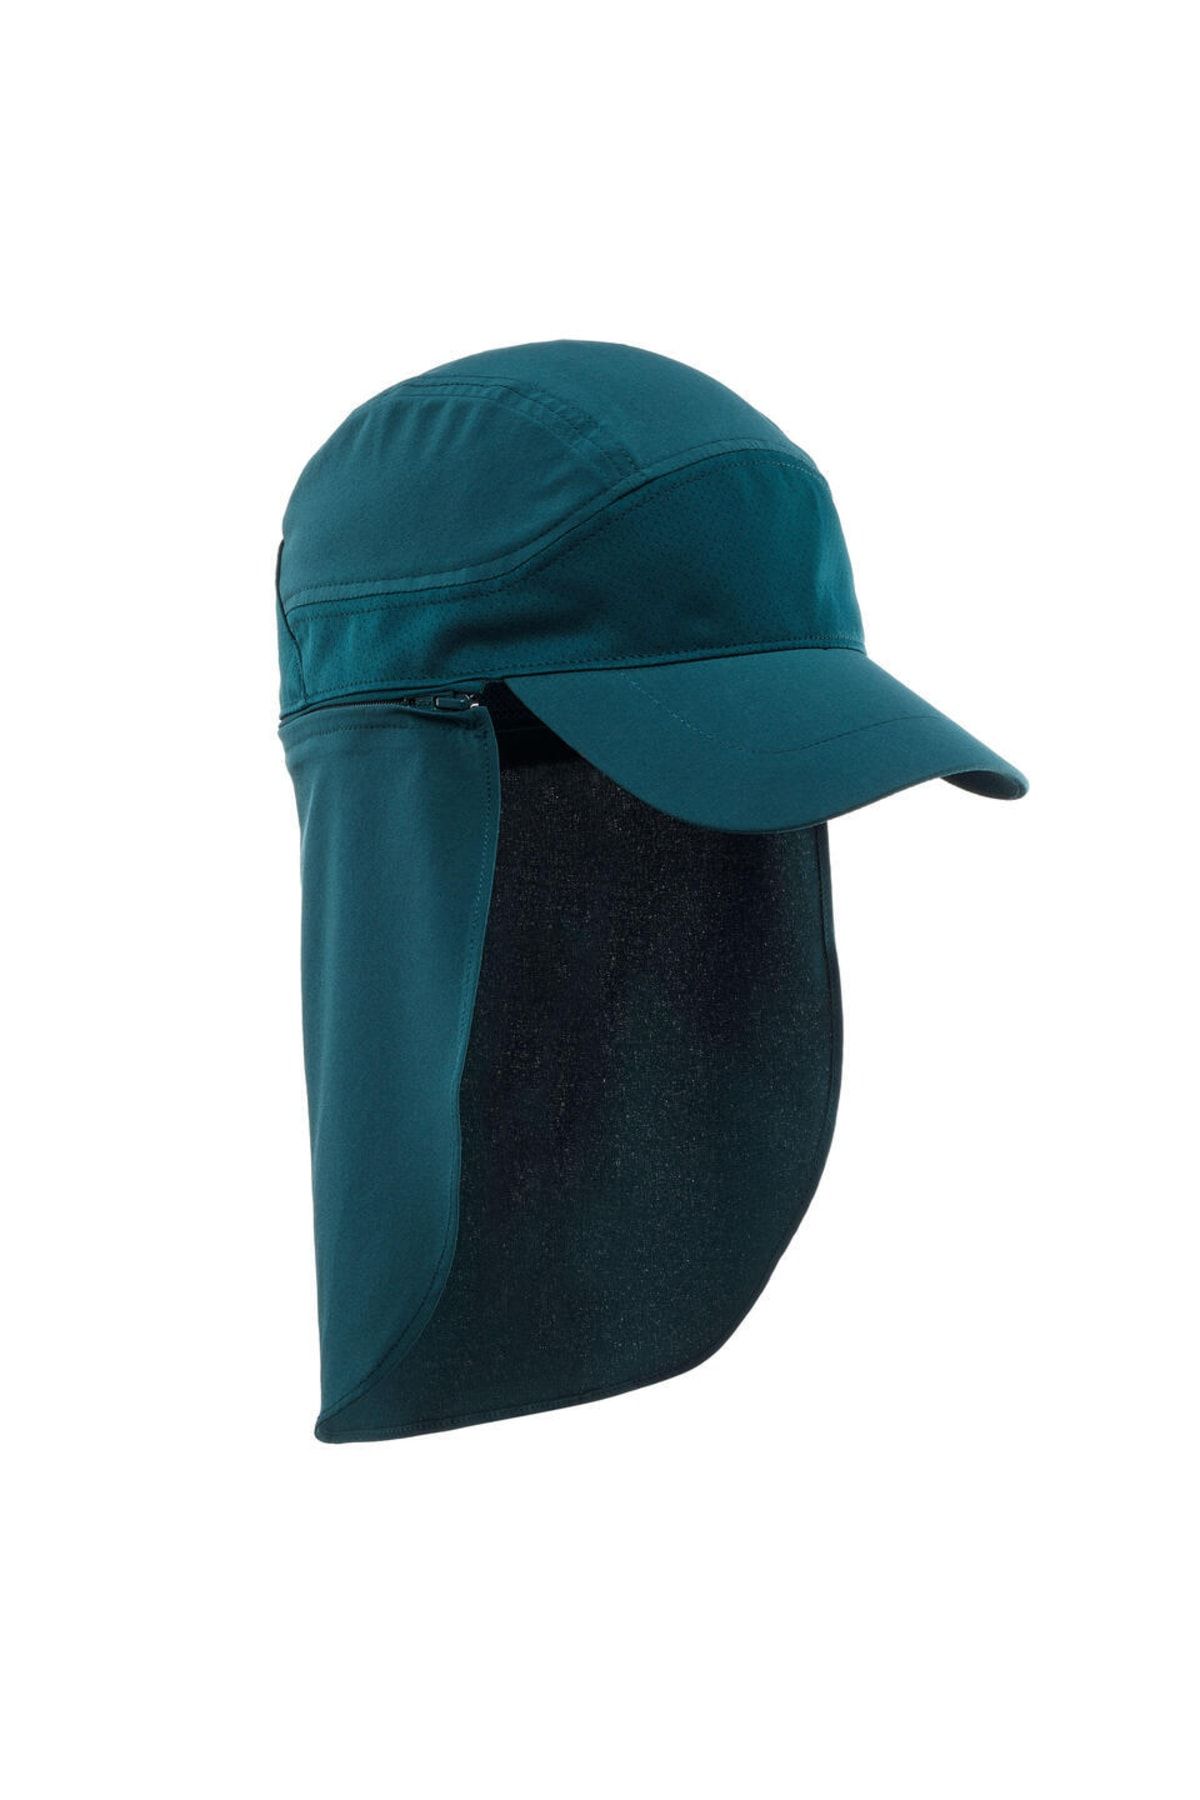 Decathlon - Uv Korumalı Çocuk Şapkası Uv Korumalı Şapka Koyu Petrol Mavisi